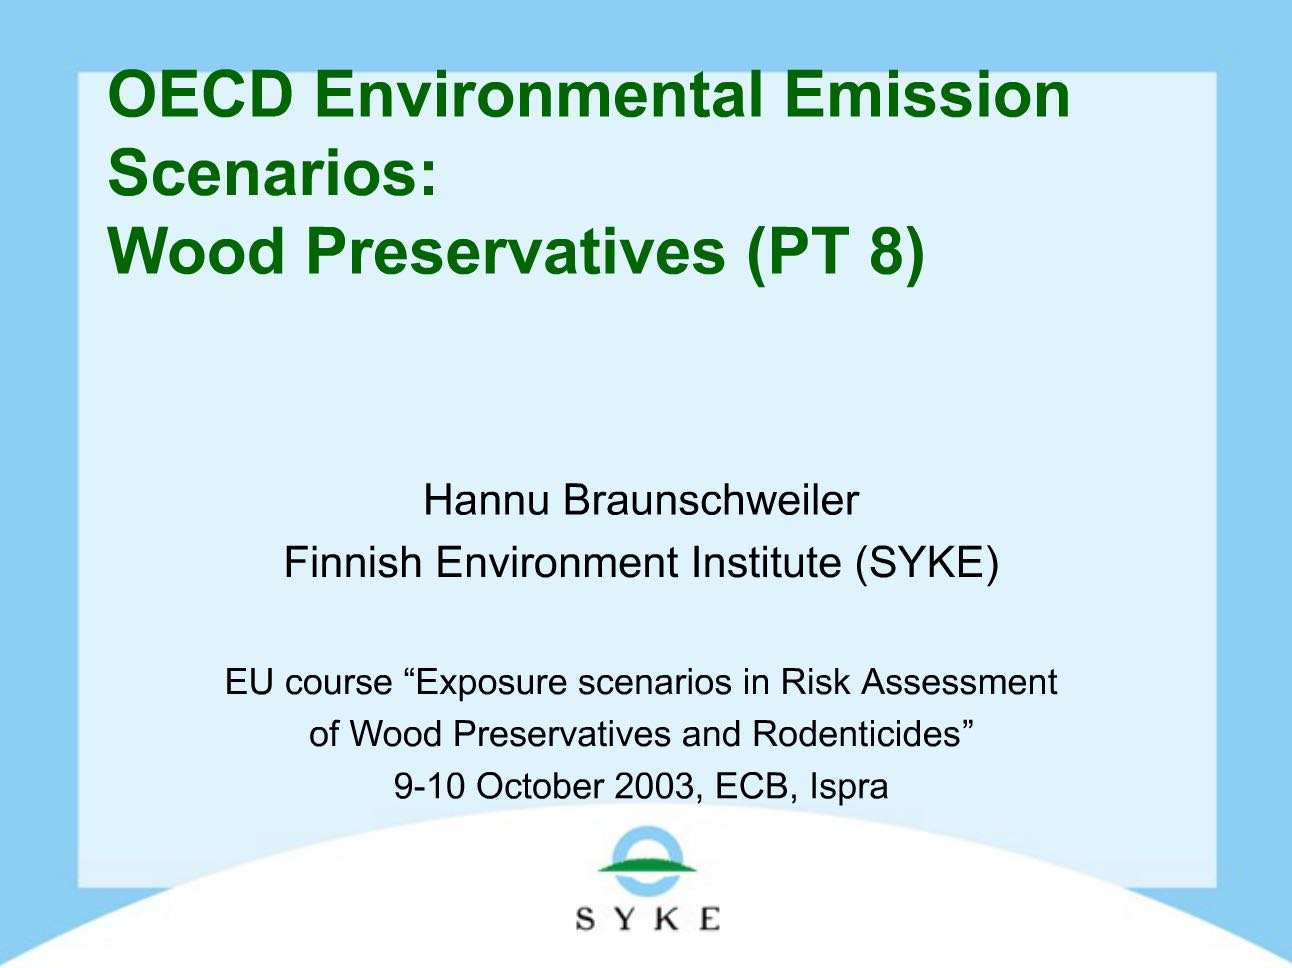 Presentation Video on Wood Preservation